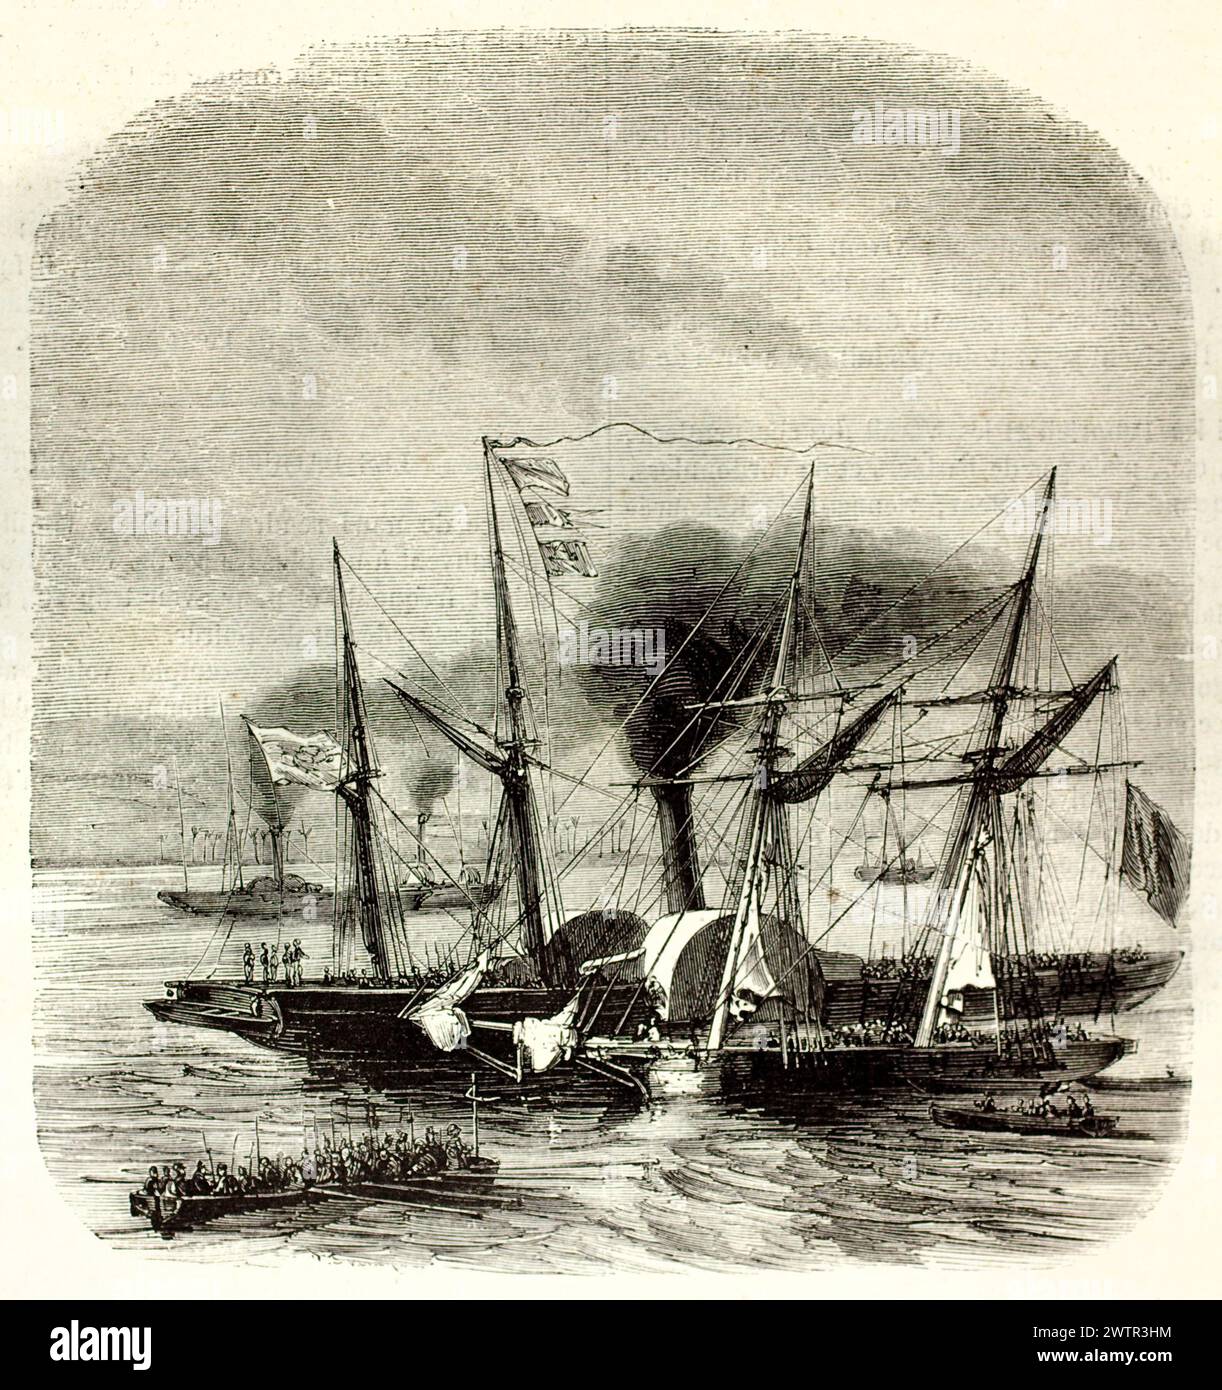 Vieja ilustración grabada de vapores mediterráneos. Por autor desconocido, publicado en Magasin pittoresque, París, 1852. Foto de stock